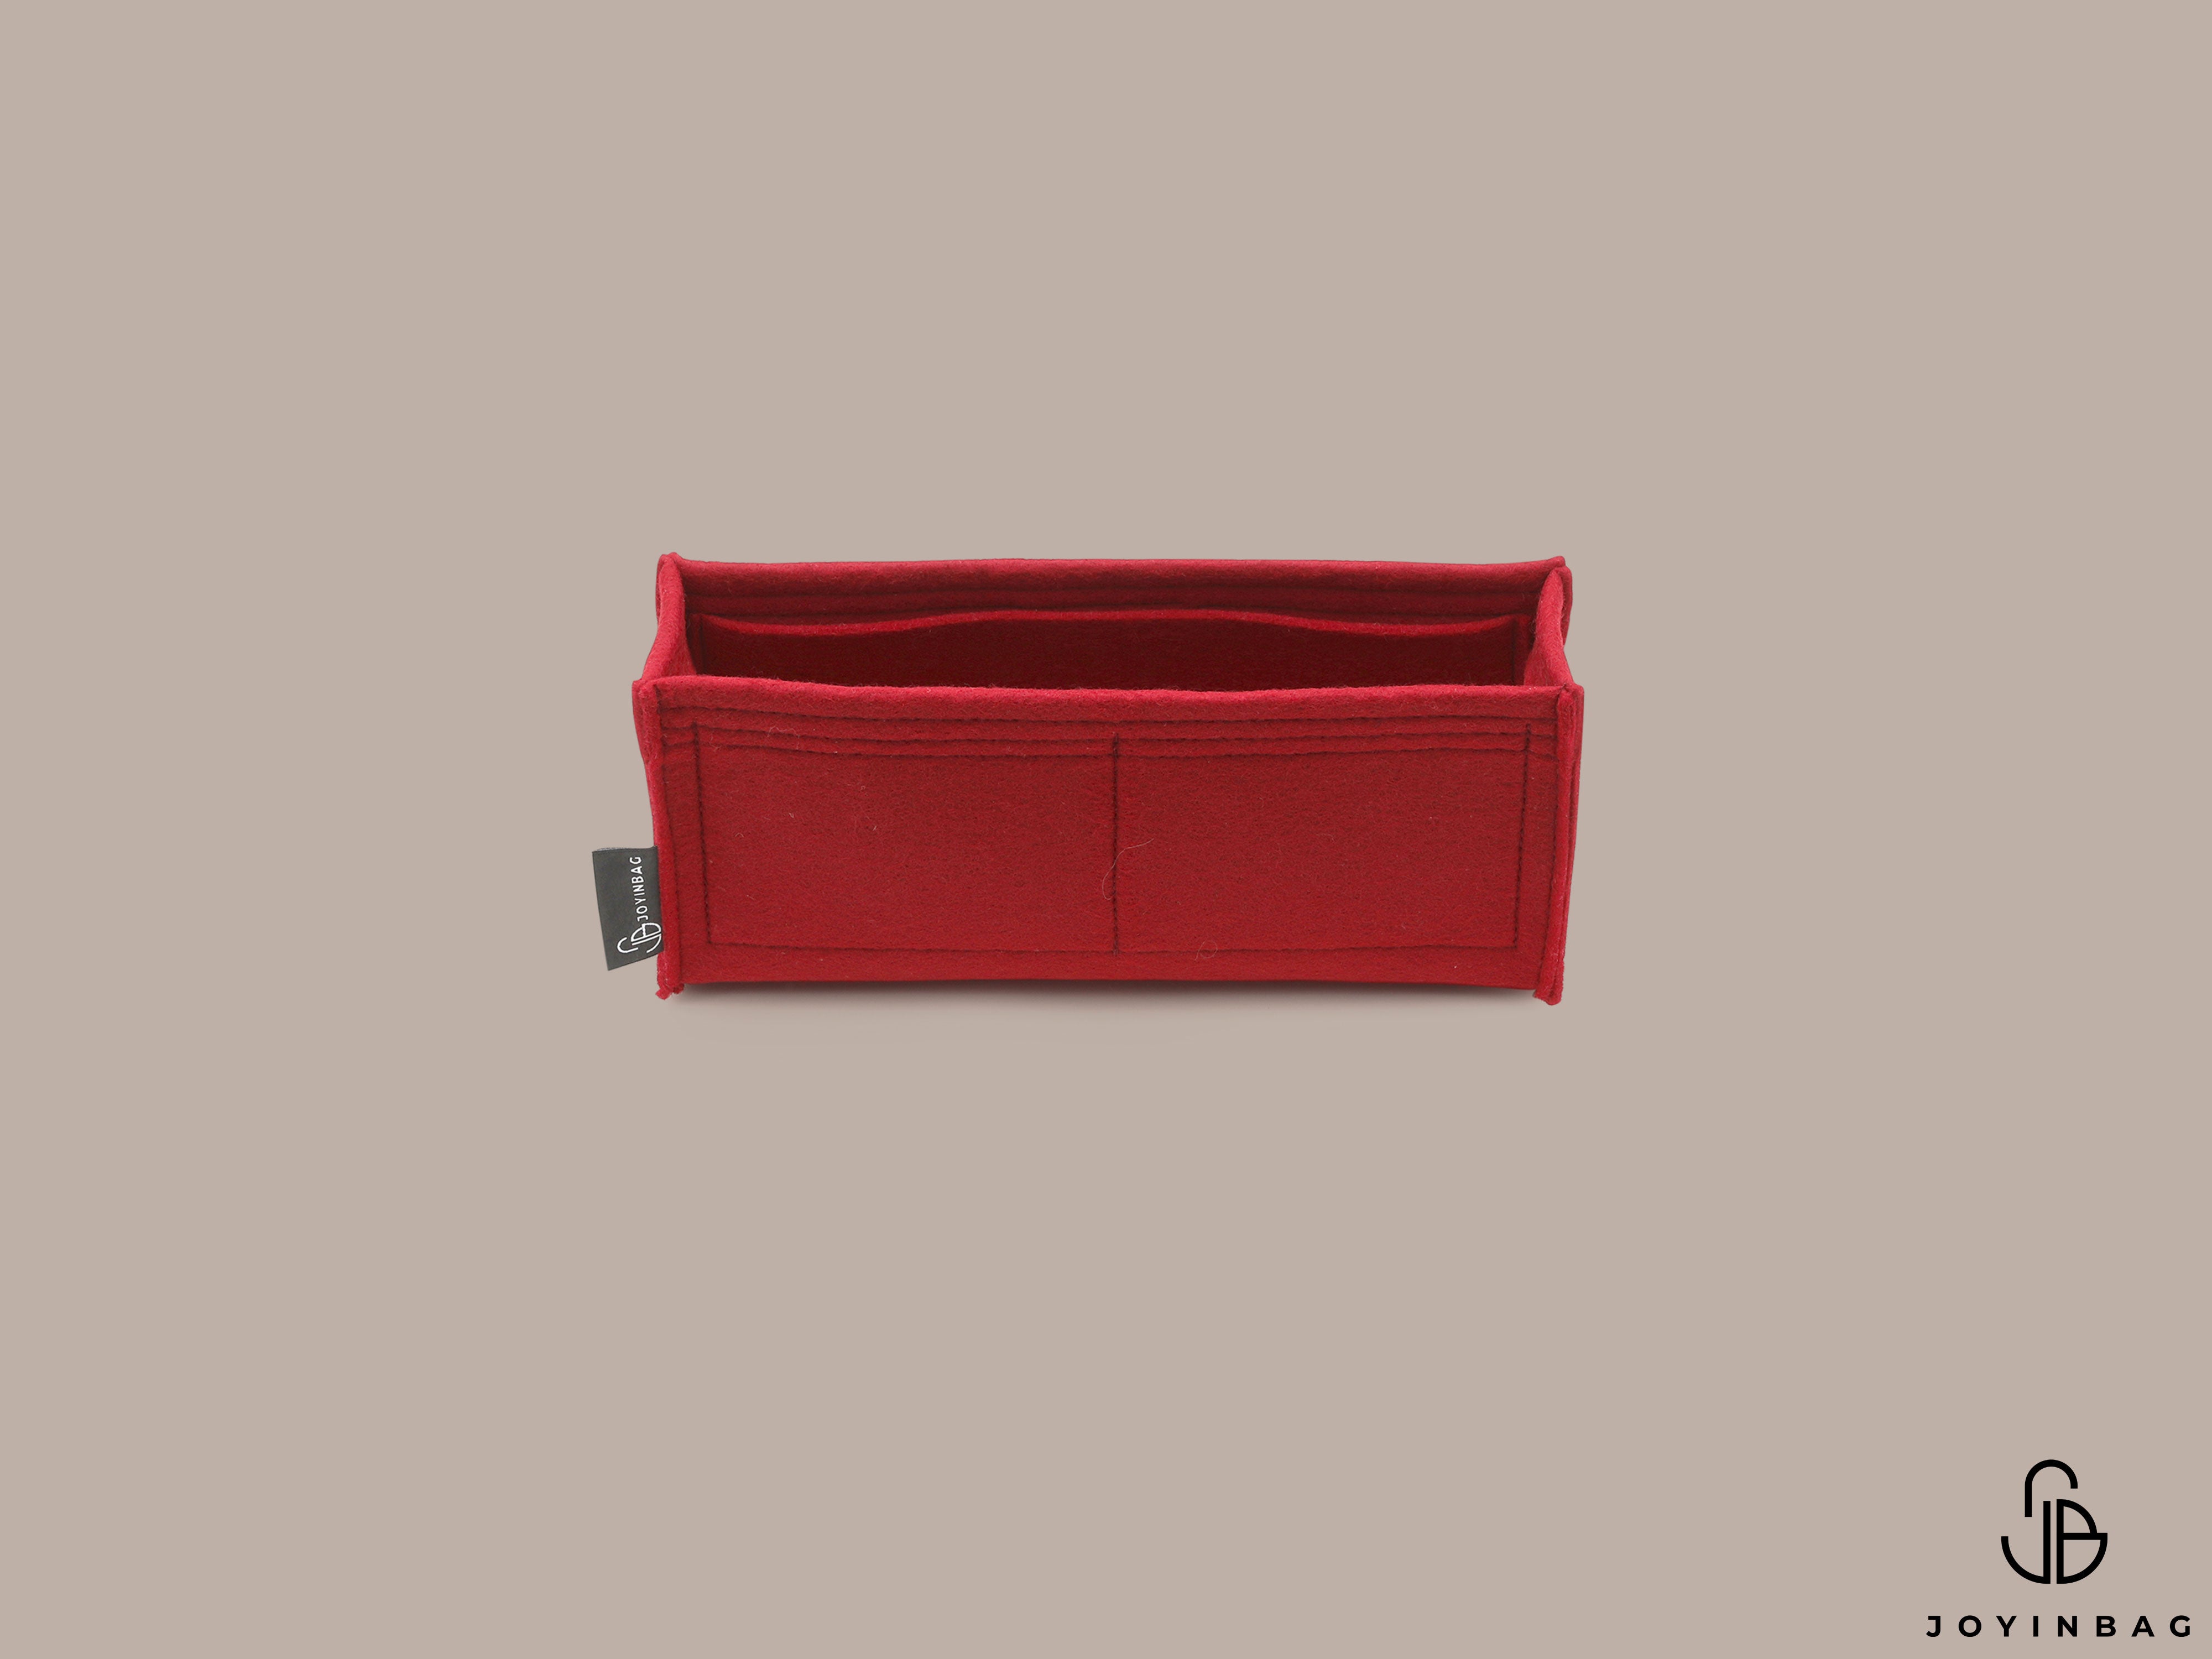 Purse Insert for Chanel Boy Medium Bag (Style A67086)